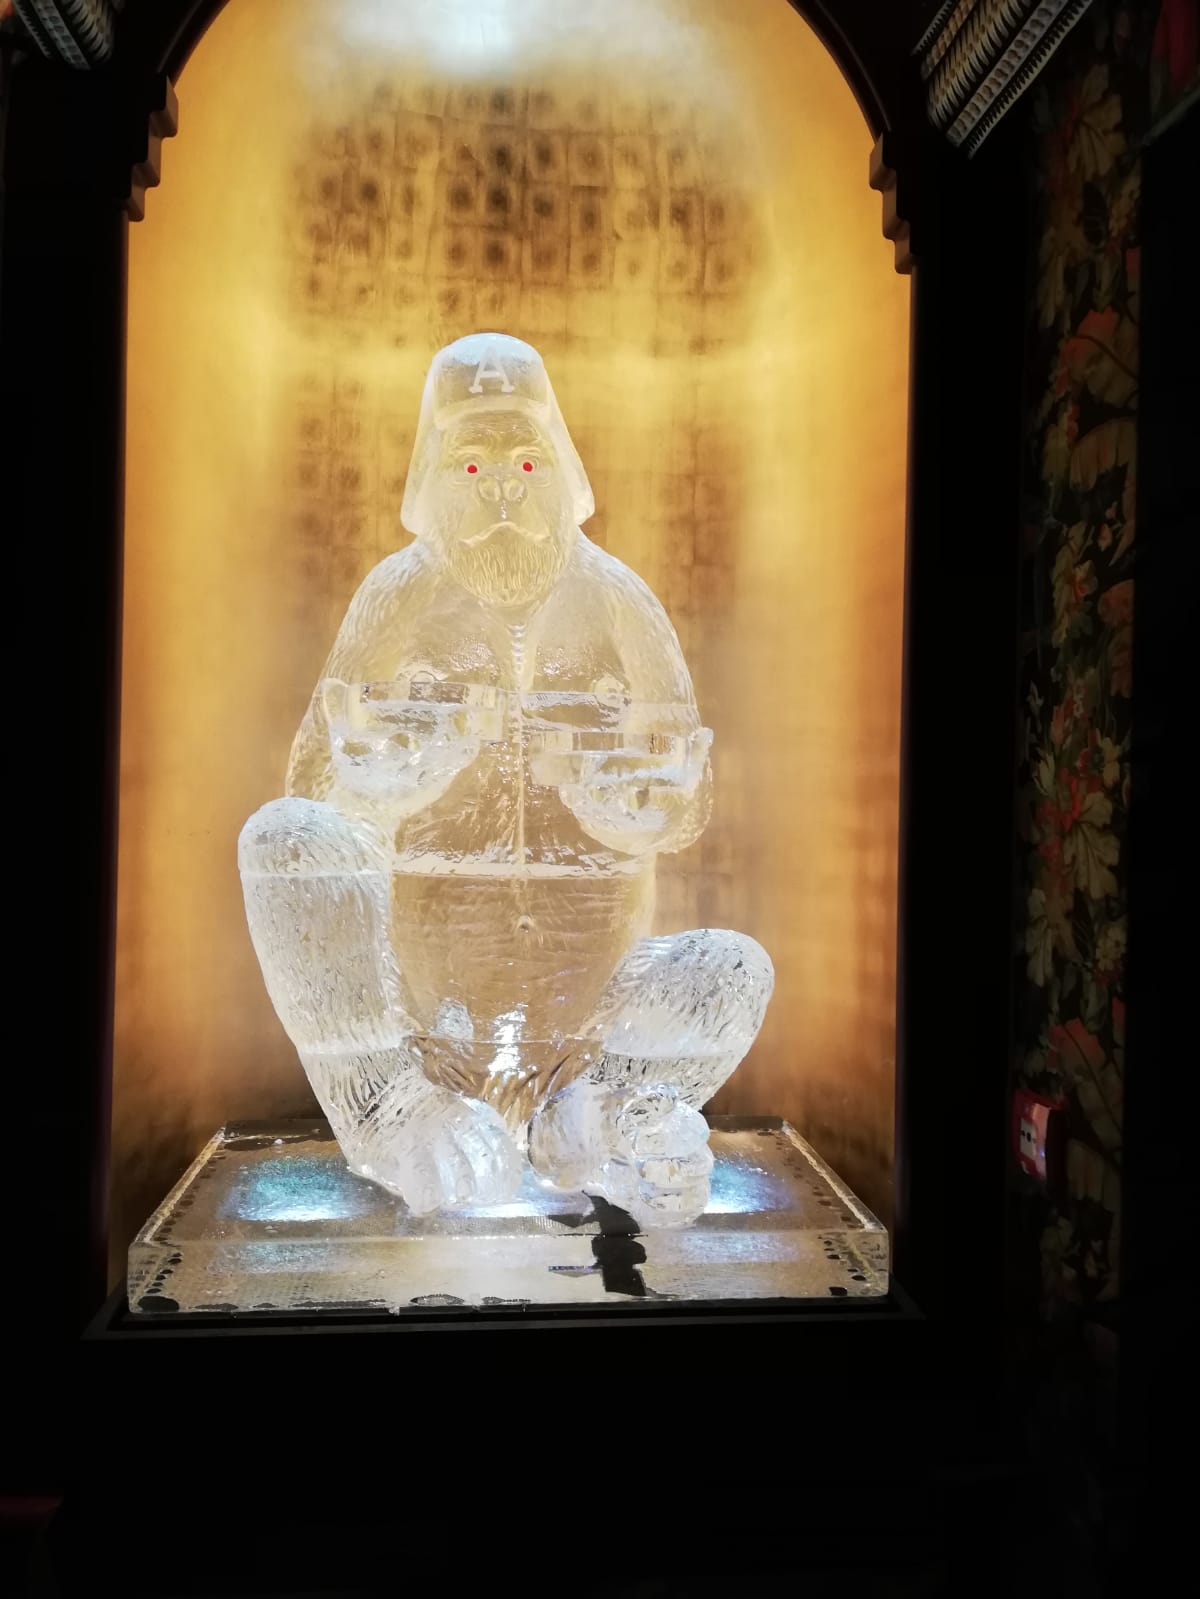 Gorilla Ice Sculpture